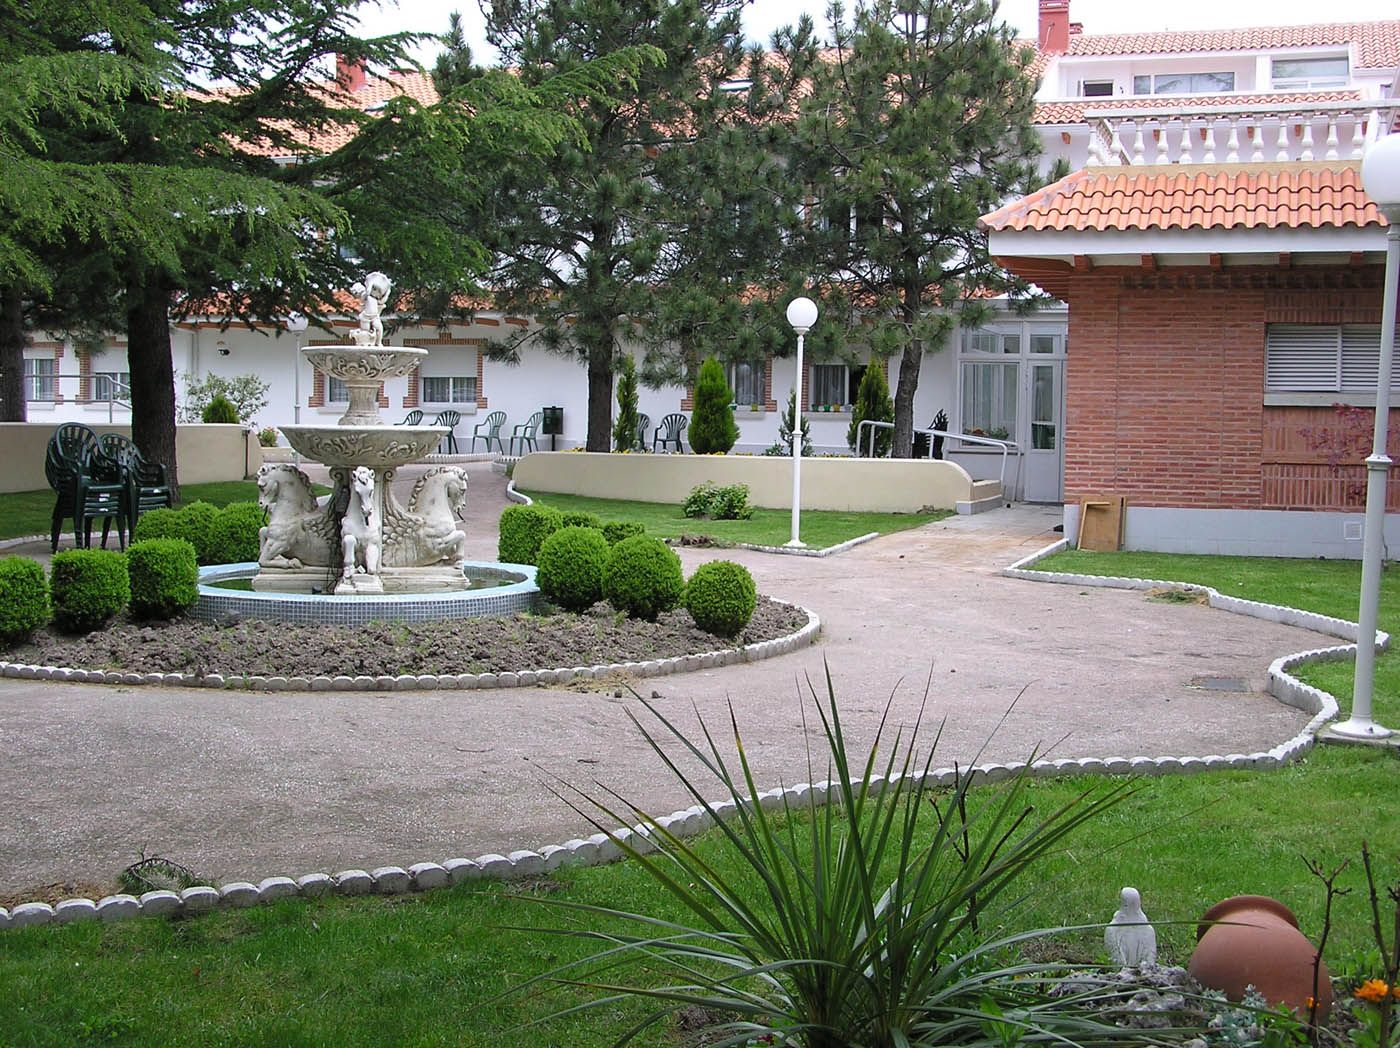 Foto 2 de Residencias geriátricas en Manzanares el Real | Ponderosa Real Hotel Residencia para Mayores